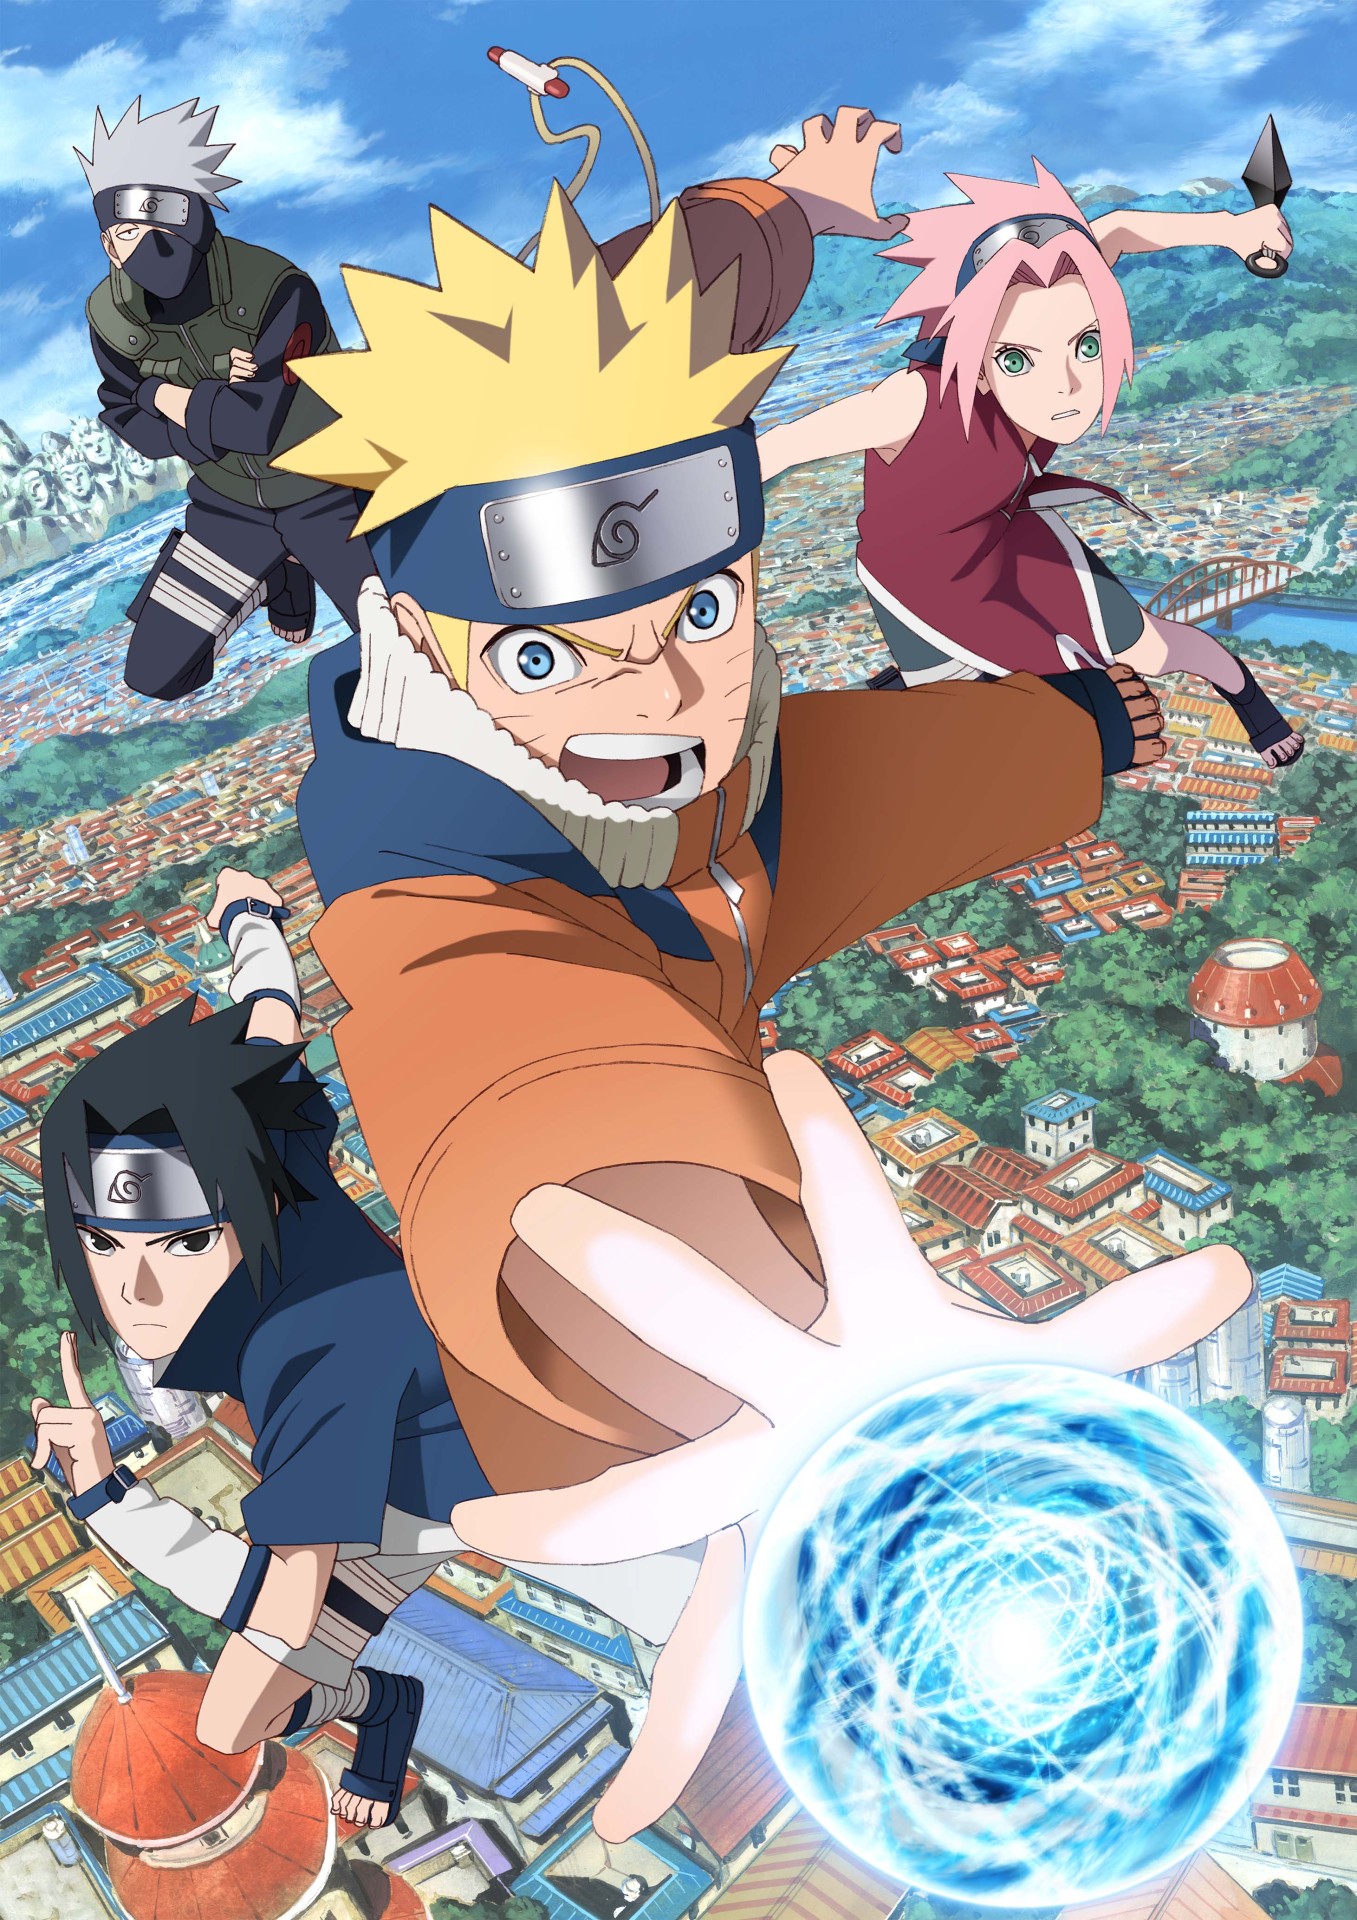 Anime de Naruto : dónde y cómo verlo online en español